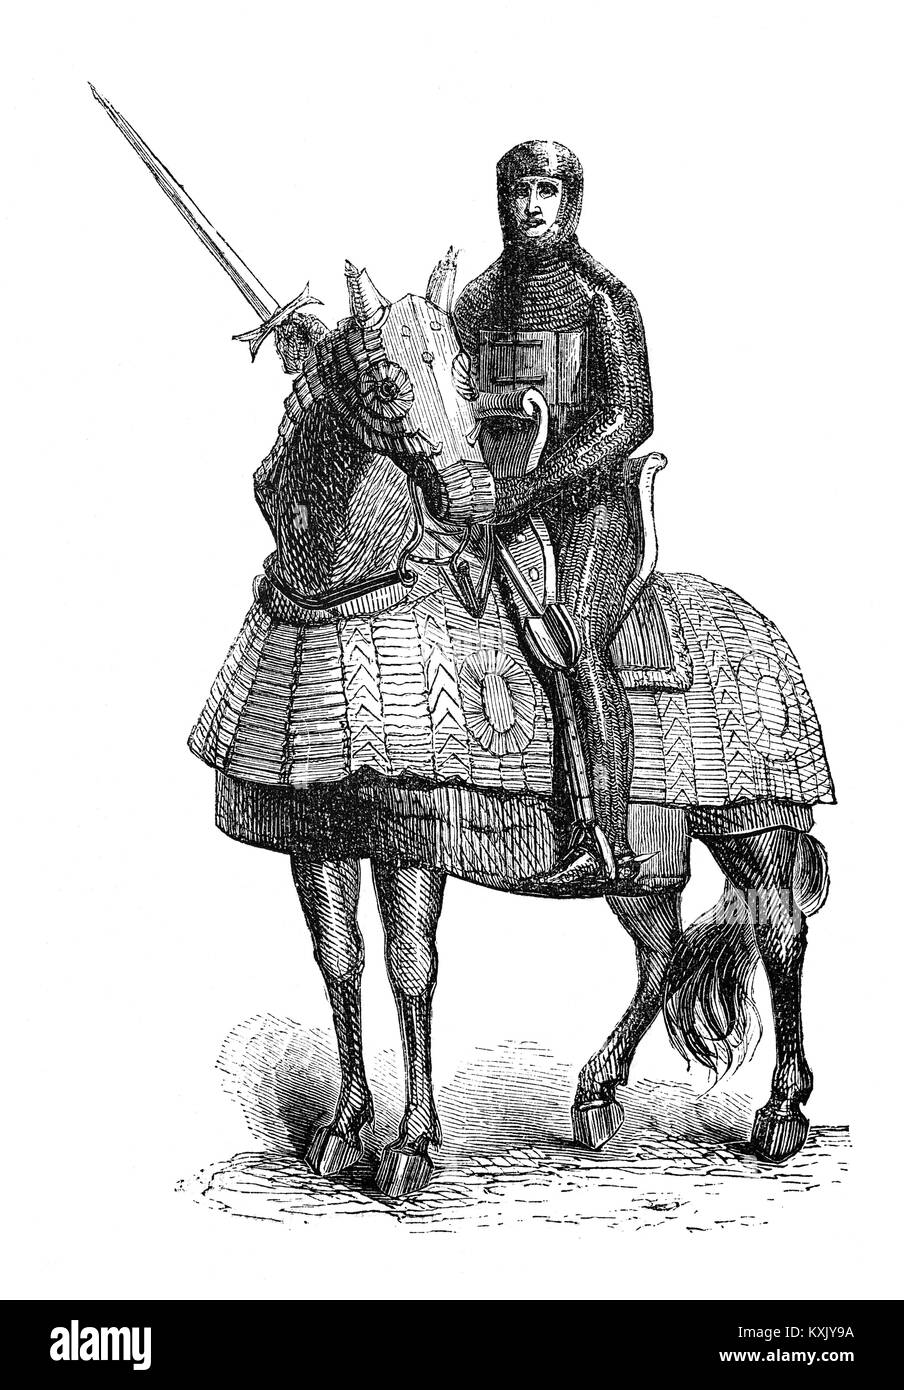 L'un des soldats à cheval de Richard I sur la Troisième Croisade (1189-1192), également connu sous le nom de Kings' Crusade. Il s'agit d'une tentative par les dirigeants européens de reconquérir la terre sainte de Saladin (ad-Ṣalāḥ Dīn Yūsuf ibn Ayyūb). La campagne a largement réussi à capturer les villes importantes d'Acre et Jaffa, et inverser la plupart des conquêtes de Saladin, mais elle n'a pas réussi à capturer Jérusalem, le soutien émotionnel et spirituel de la motivation de la Croisade. Banque D'Images